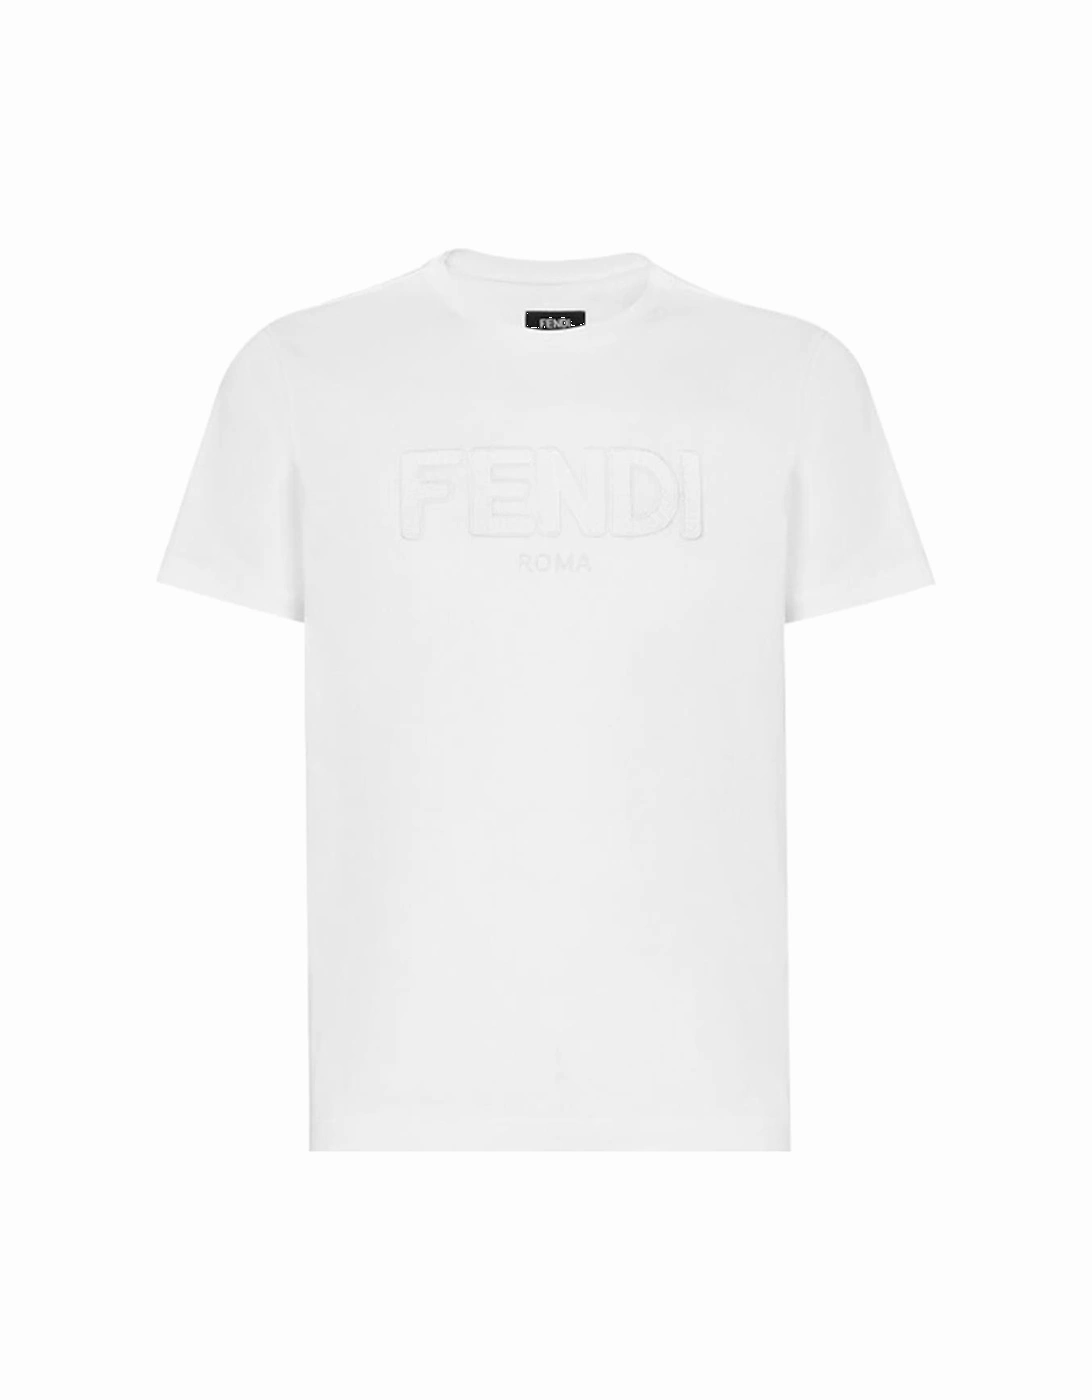 Zig-Zag Logo T-Shirt in White, 2 of 1